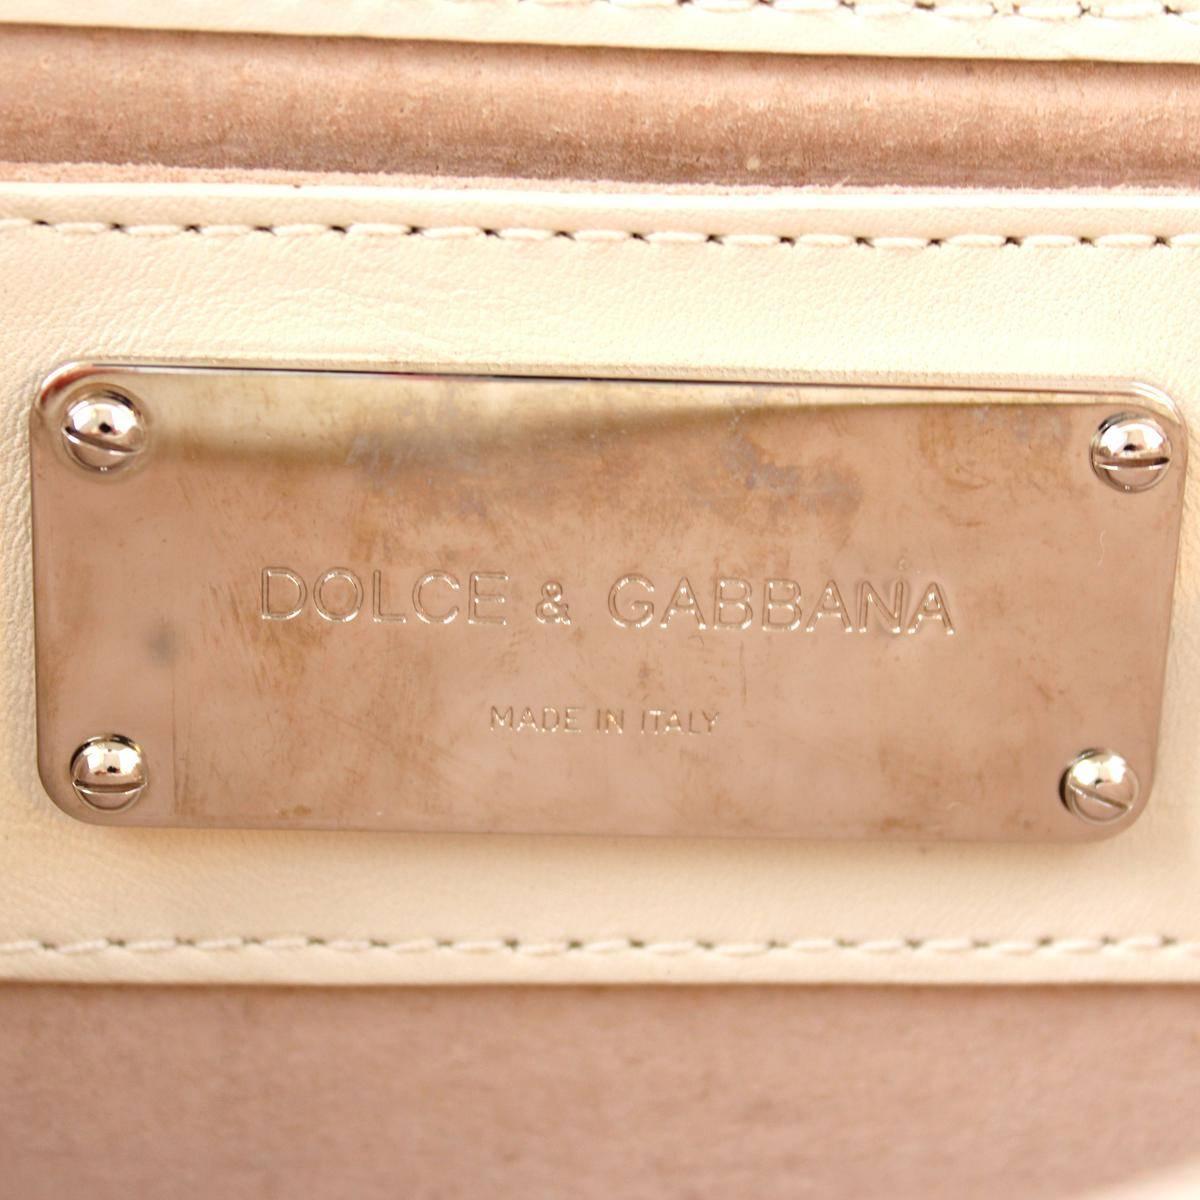 Dolce & Gabbana Reptile Pochette In Good Condition For Sale In Gazzaniga (BG), IT